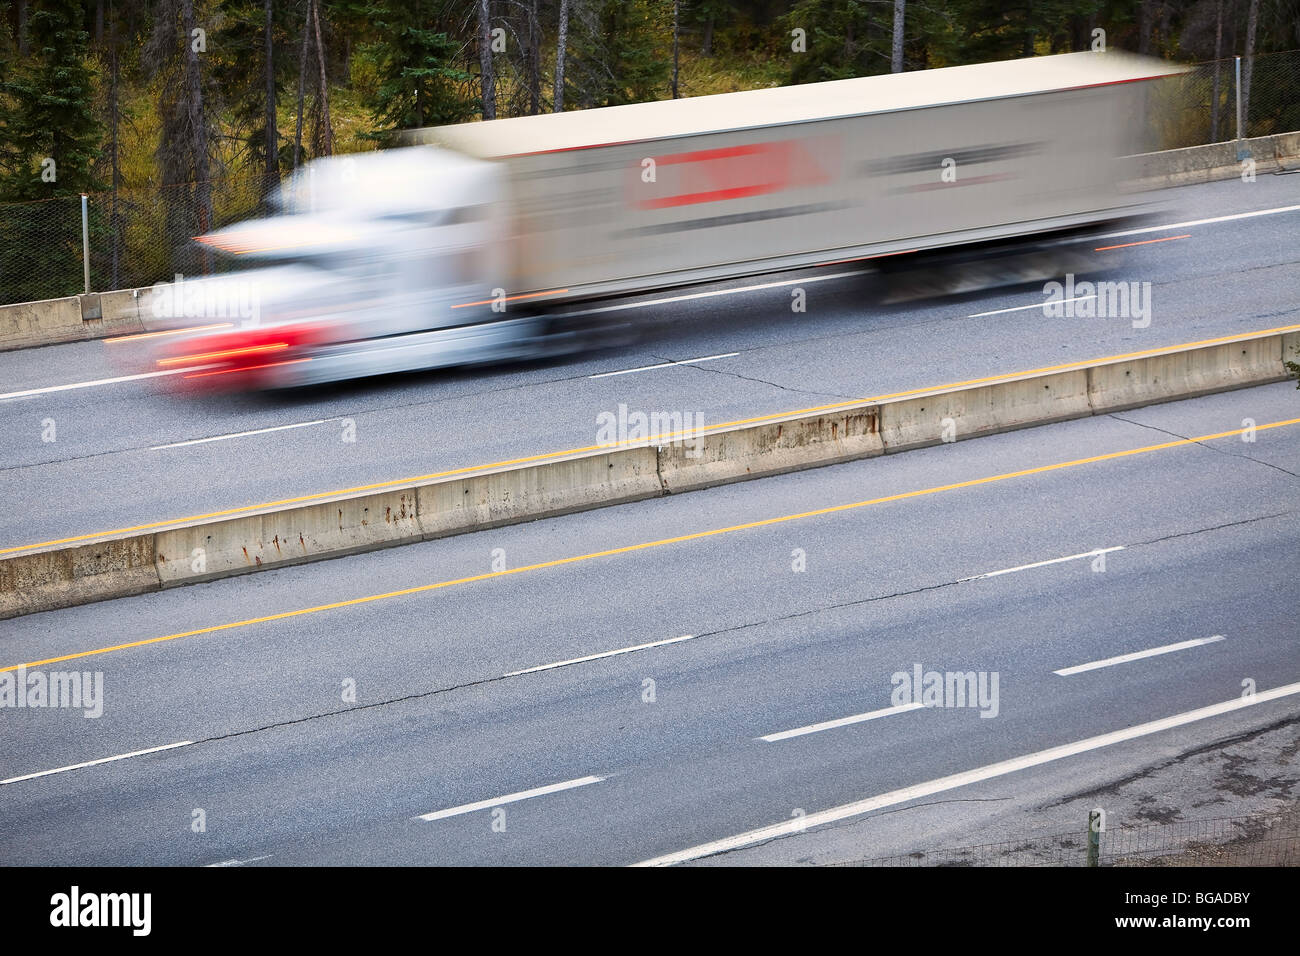 Imagen borrosa de movimiento de un camión de transporte de la autopista Trans-Canada, Parque Nacional de Banff, Alberta, Canadá. Foto de stock